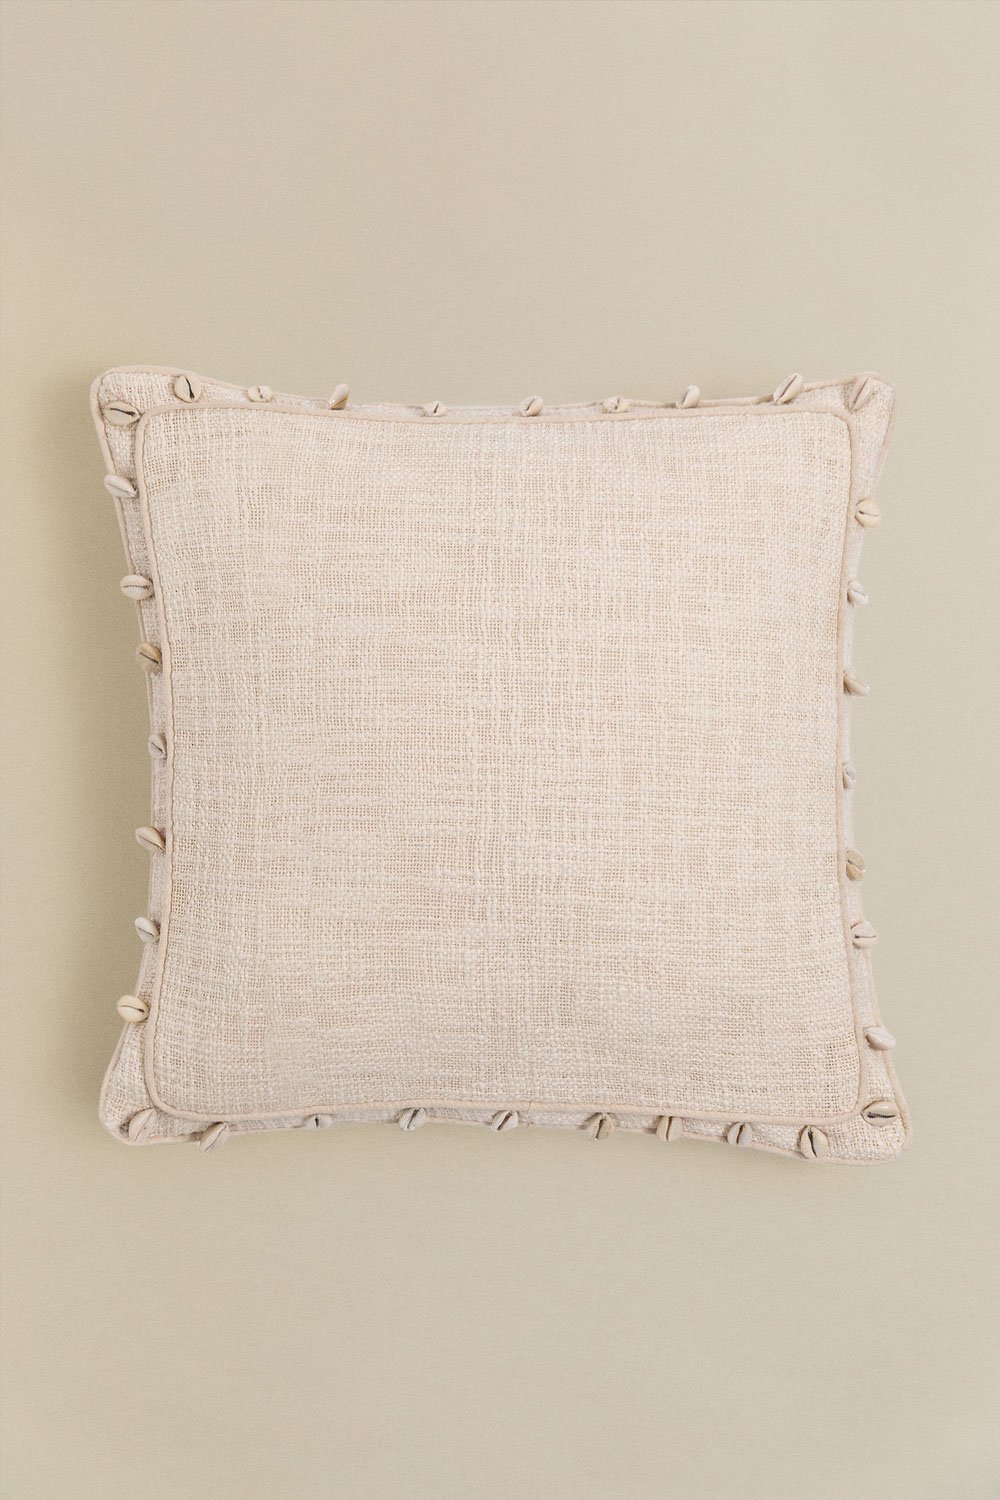 Cuscino quadrato in cotone (45x45 cm) Agibe, immagine della galleria 1